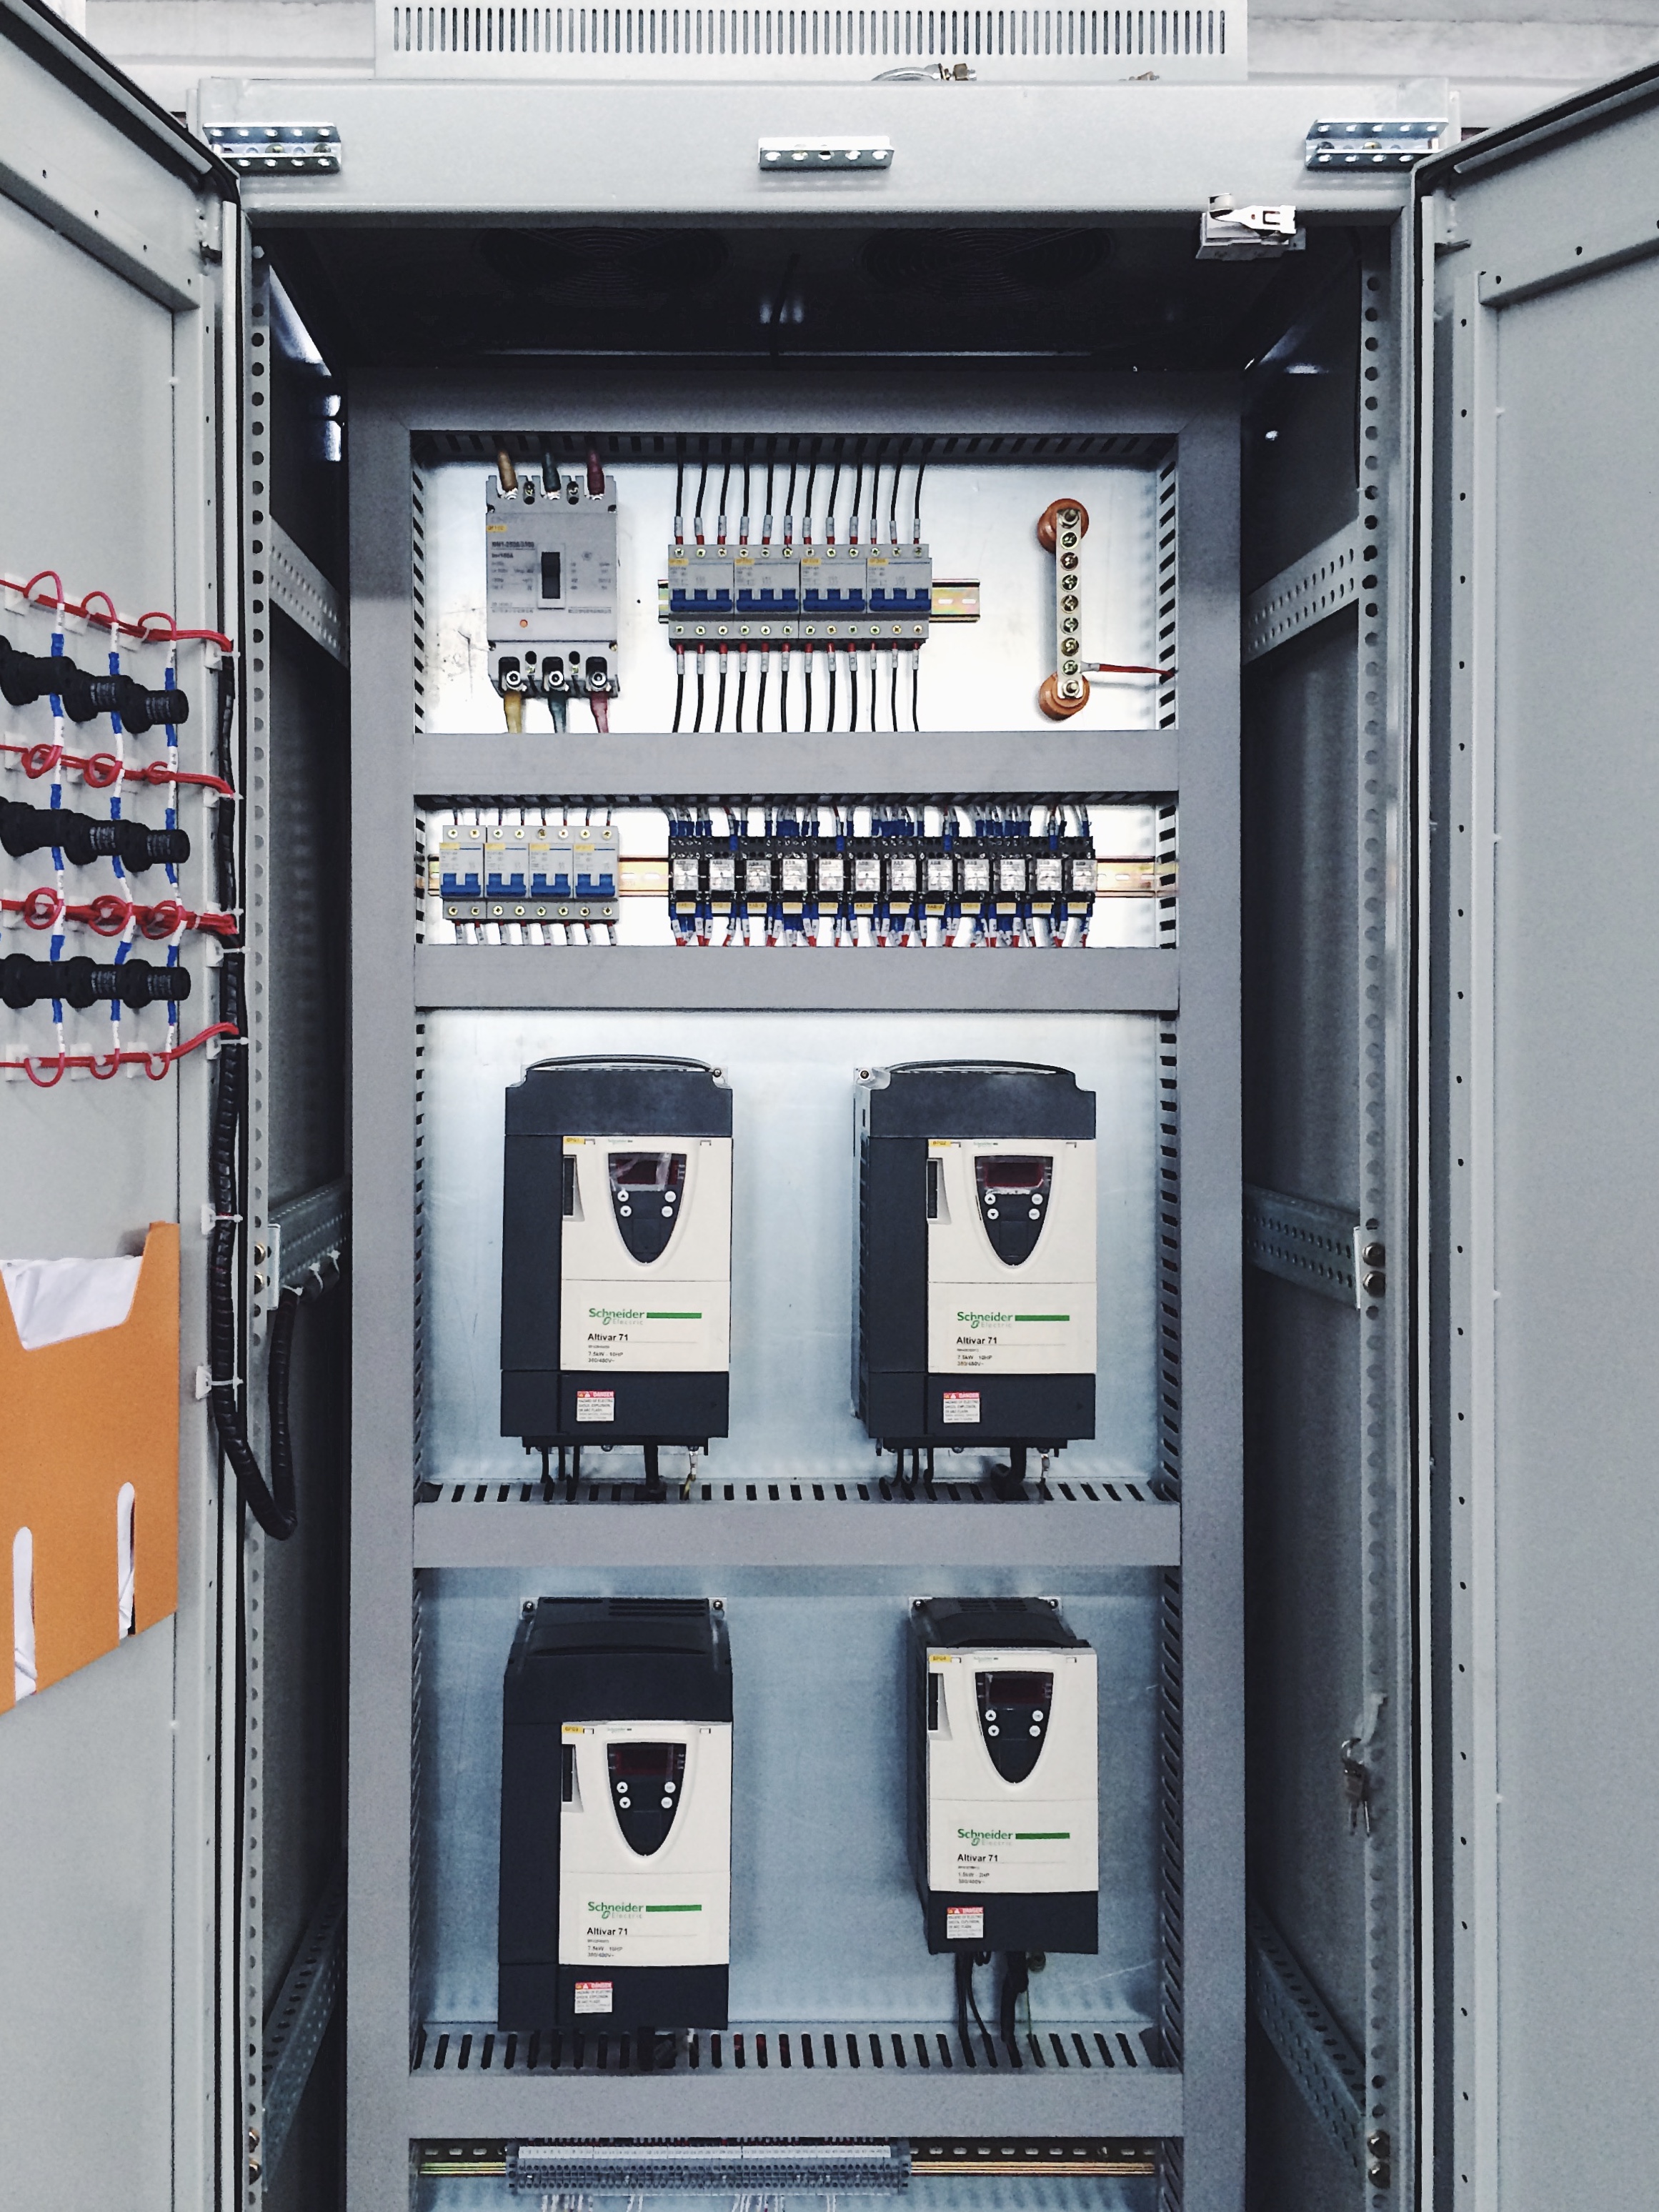 变频柜 abb变频器 plc控制柜 双螺杆挤出机控制柜